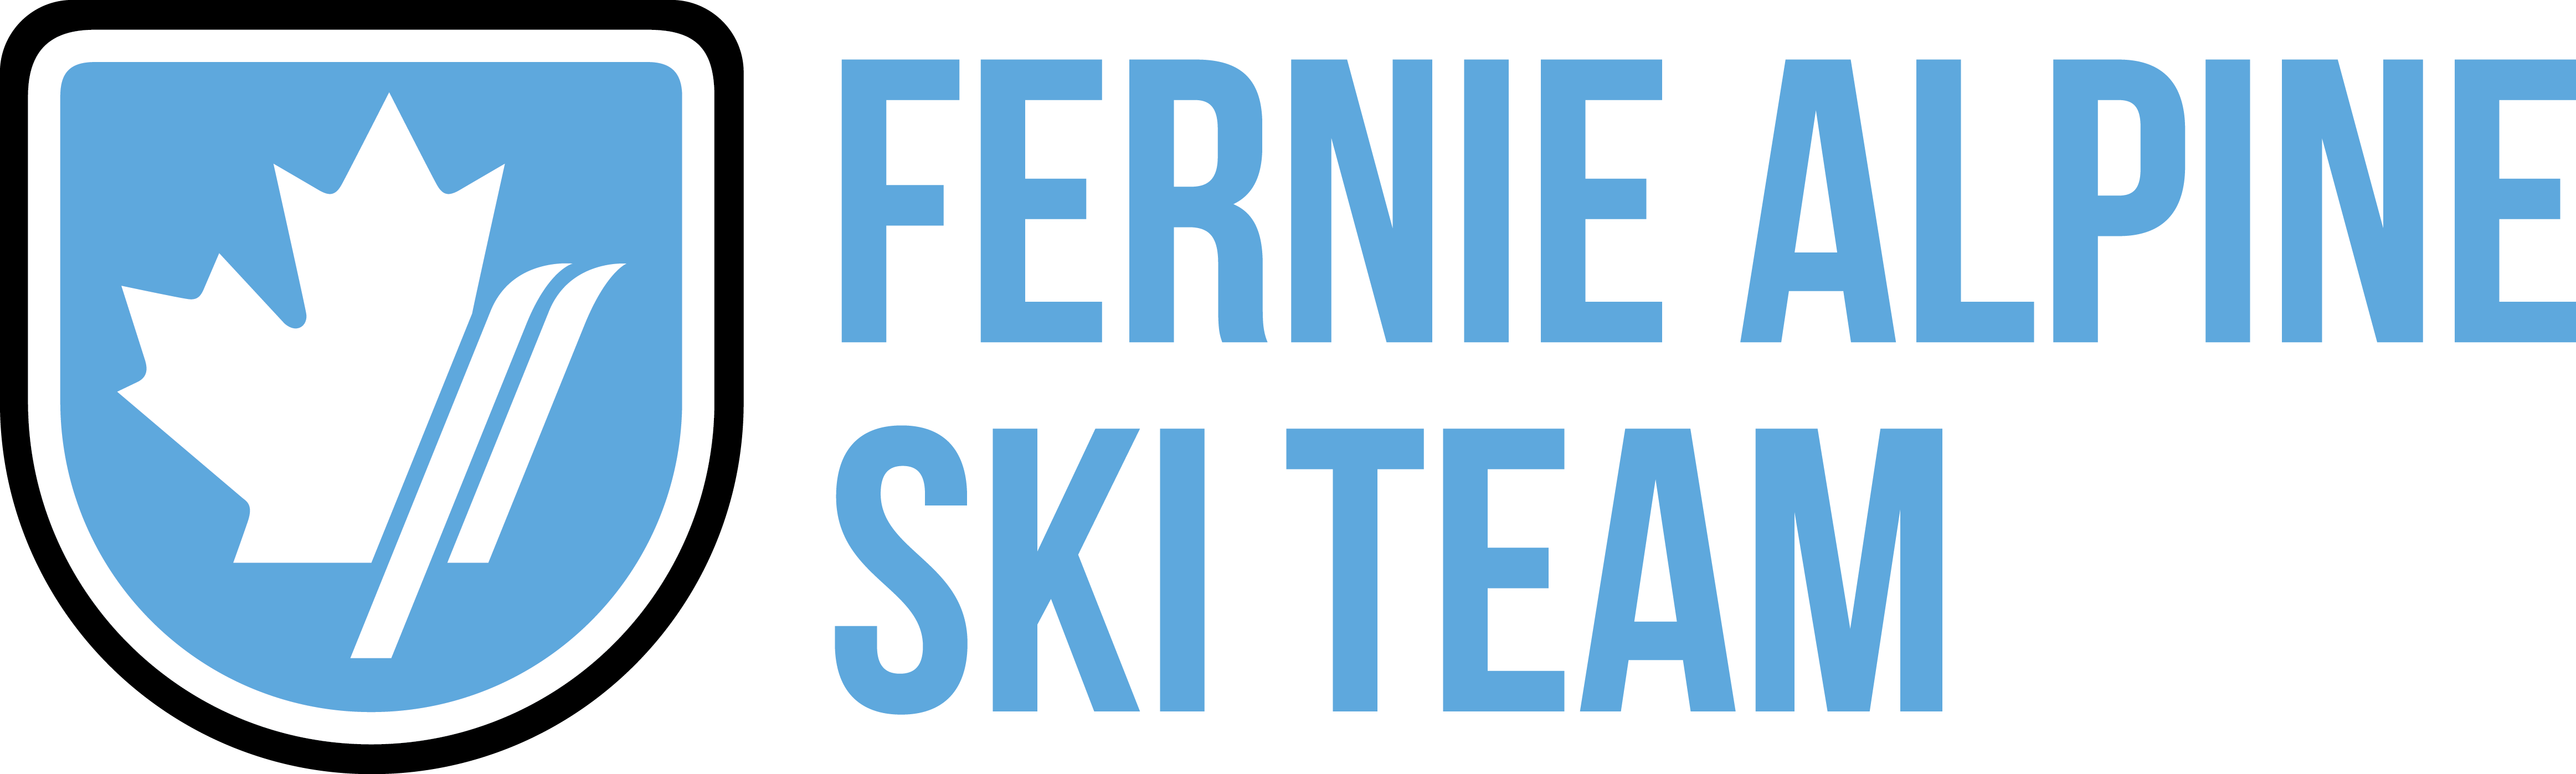 Fernie Alpine Ski Team